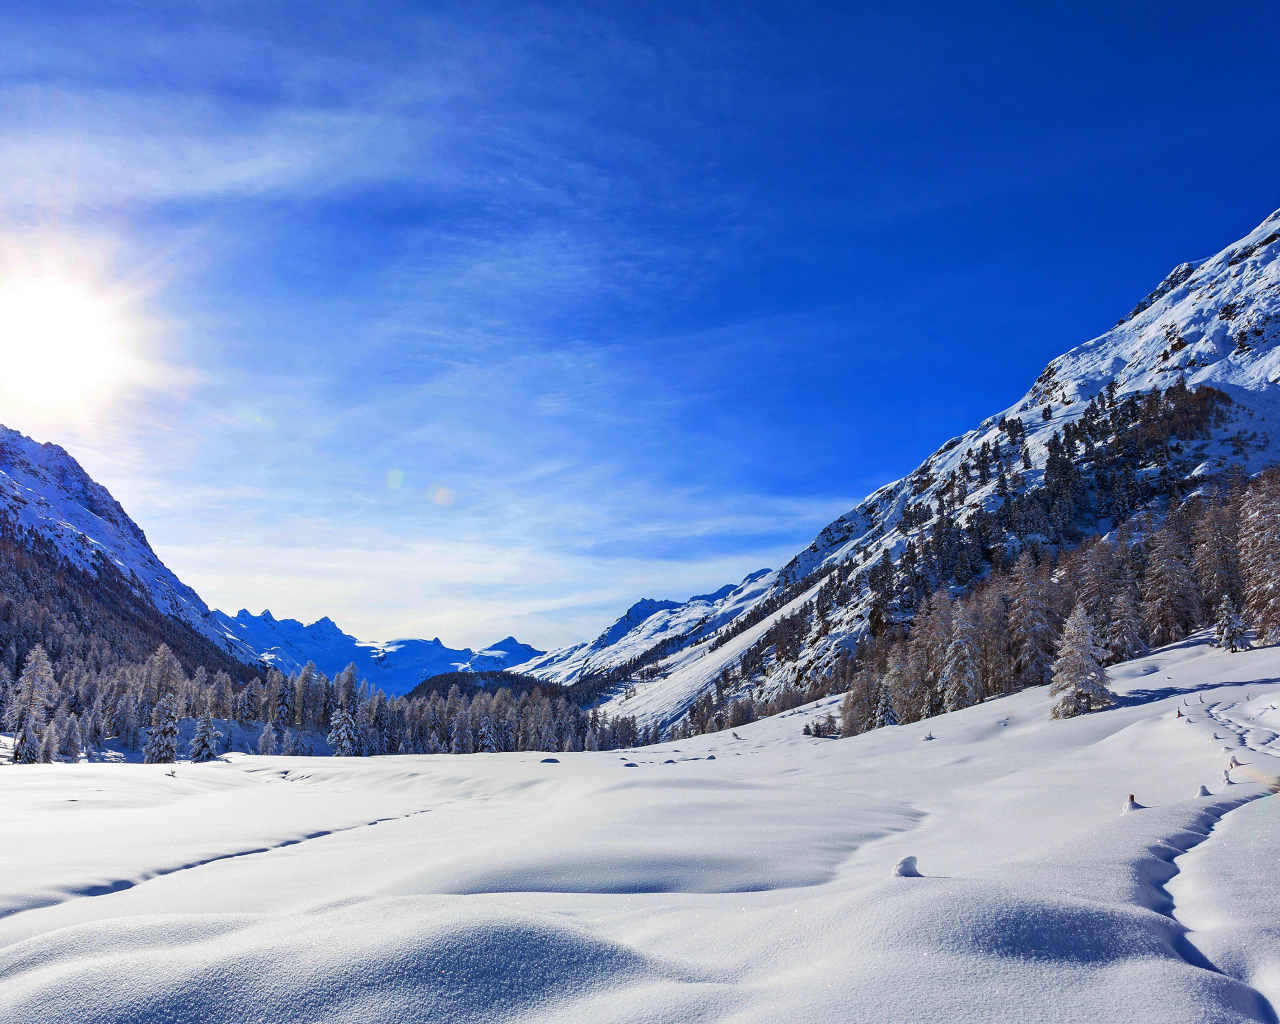 Зимнее солнце в голубом небе над покрытыми снегом горами